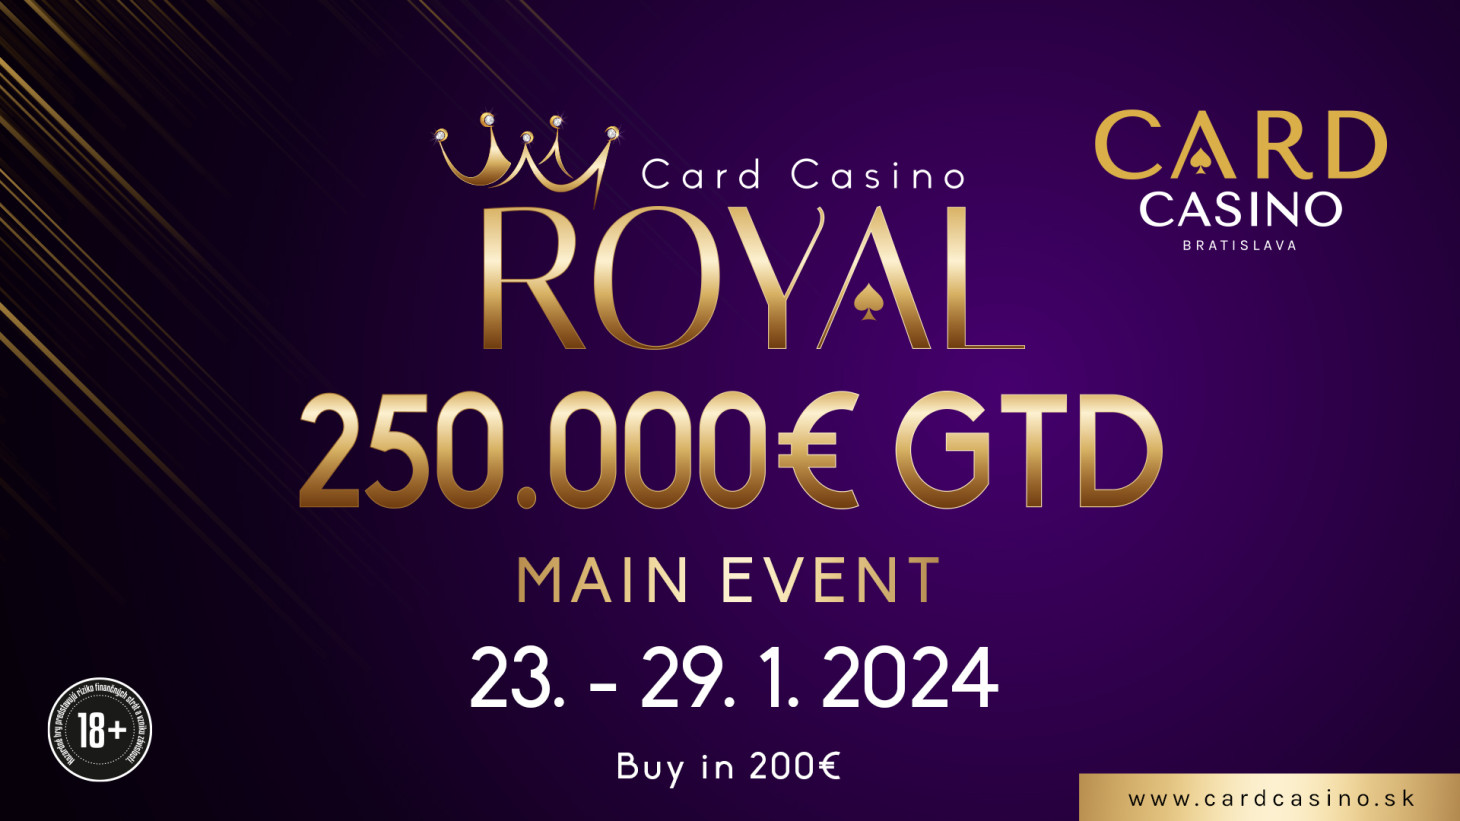 Royal starts. €250,000 Guaranteed Tournament